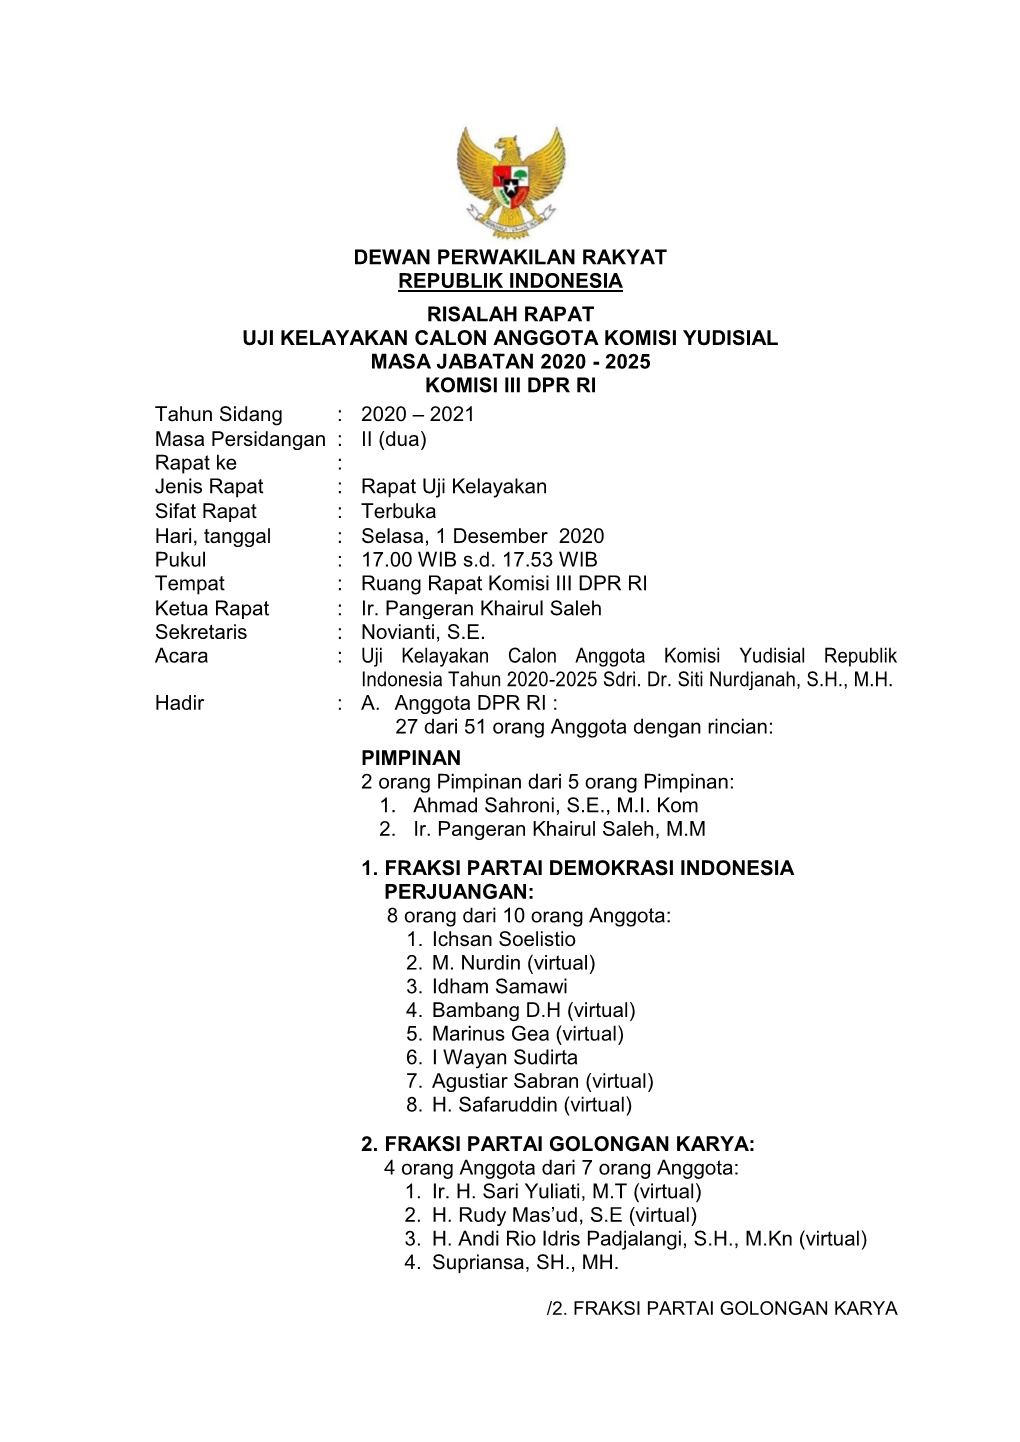 Risalah Uji Kelayakan Calon Anggota Komisi Yudisial A.N. Siti Nurdjanah